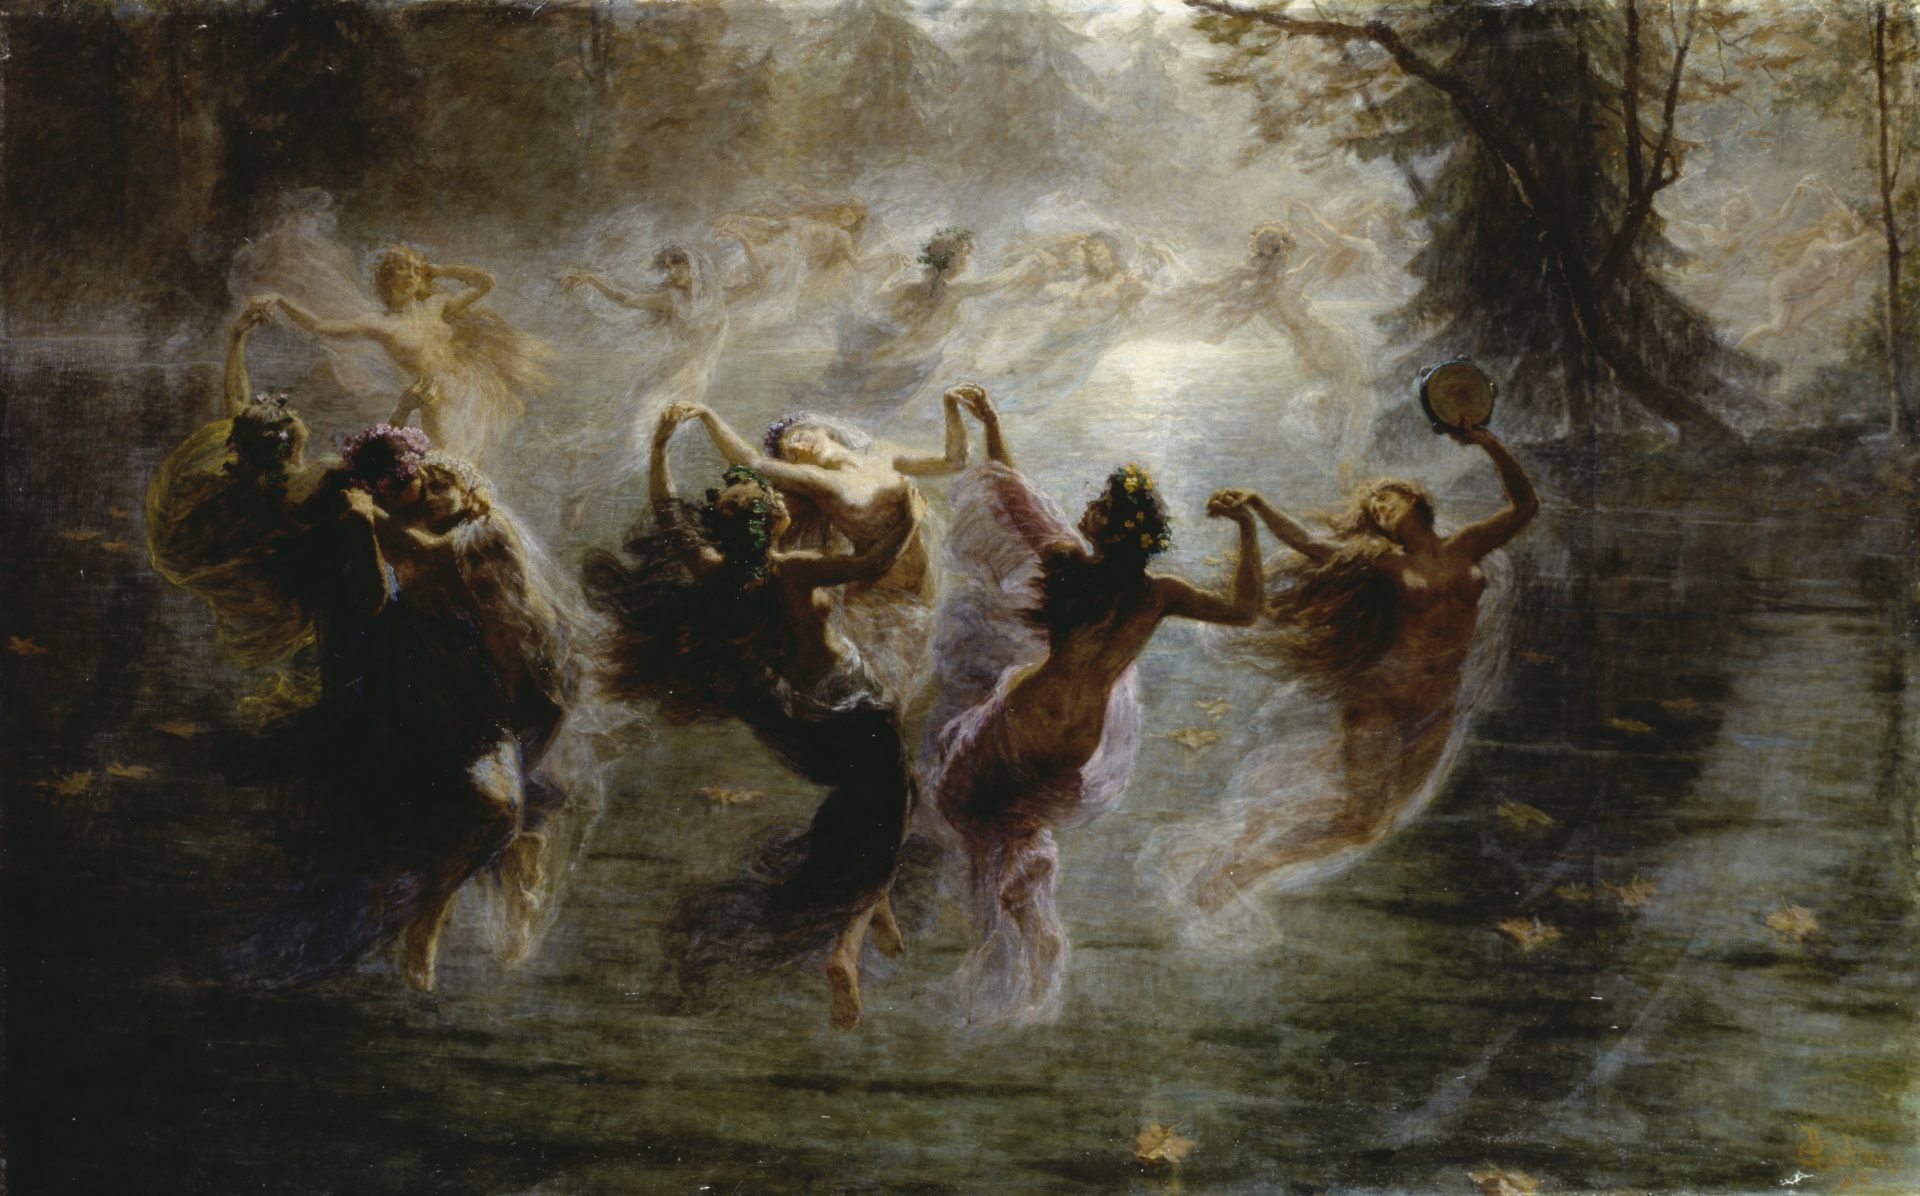 The Fairies, by Bartolomeo Giuliano (1825-1909)